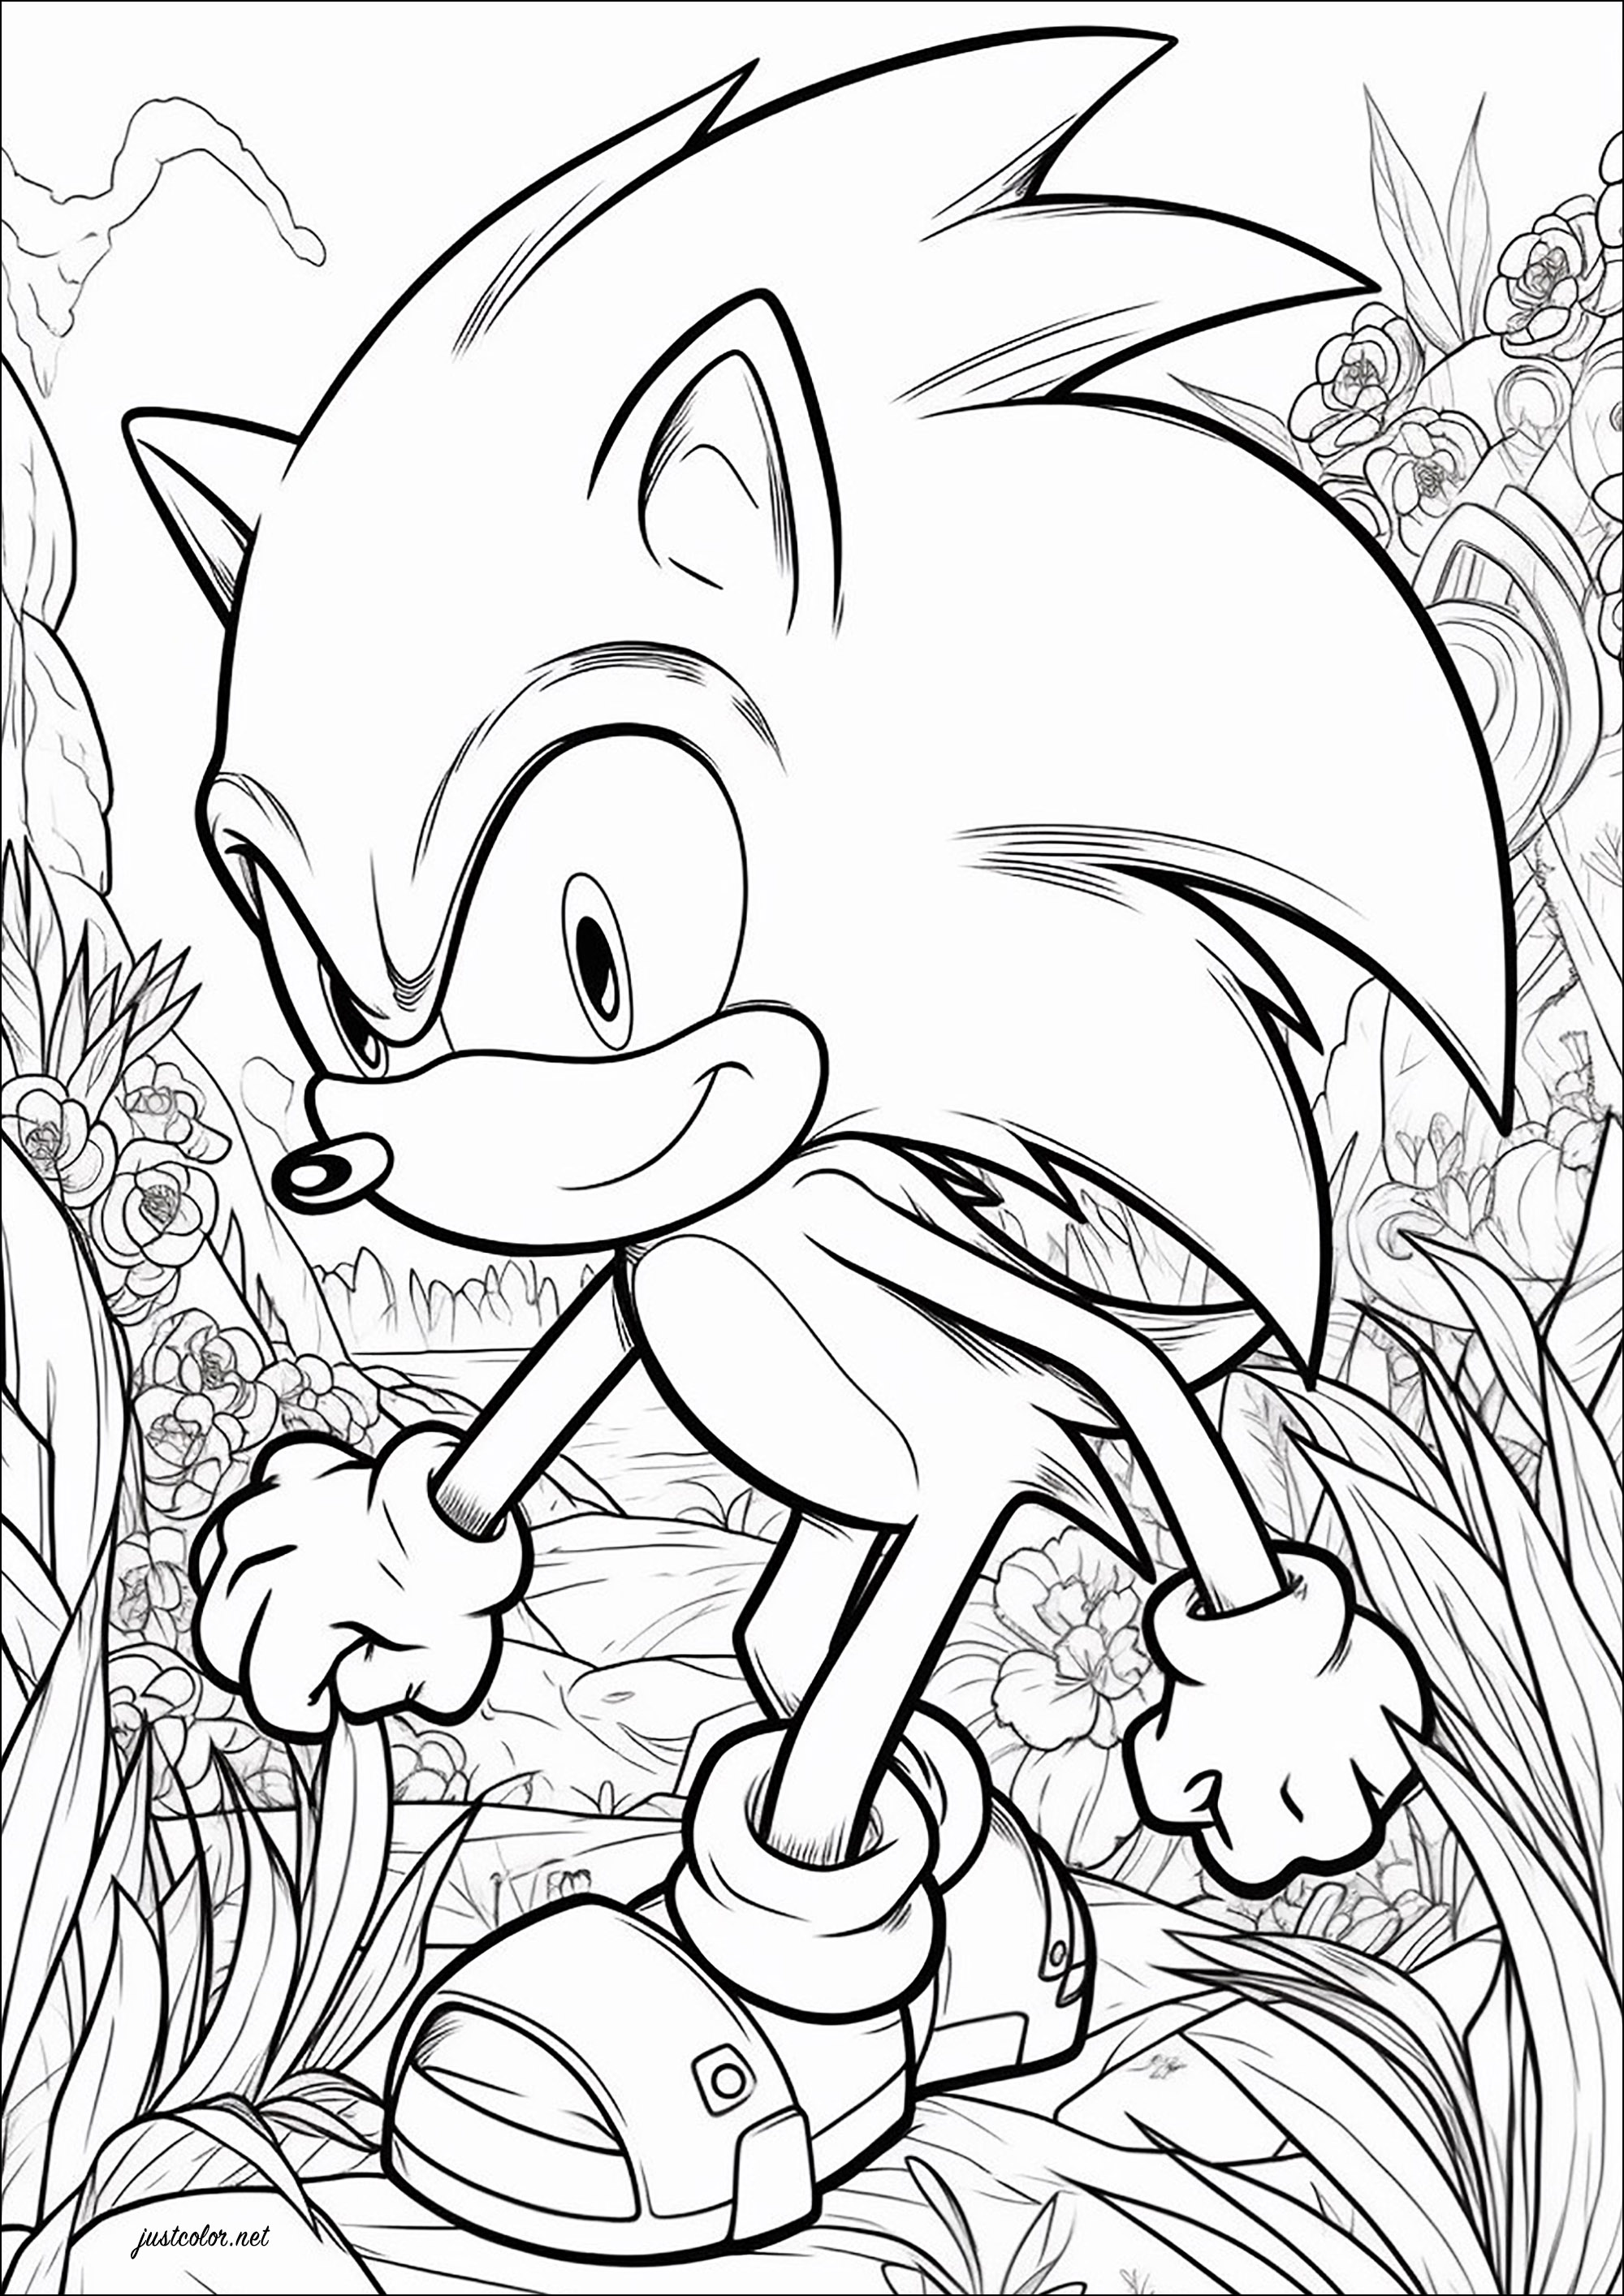 Sonic le hérisson et joli fond fleuri. Sonic the Hedgehog est une série de jeux vidéo, développée par la firme japonaise Sega depuis 1991. Elle met en avant la mascotte de la firme Sonic, un hérisson bleu anthropomorphe, luttant contre l'antagoniste principal de la série, le Dr Eggman